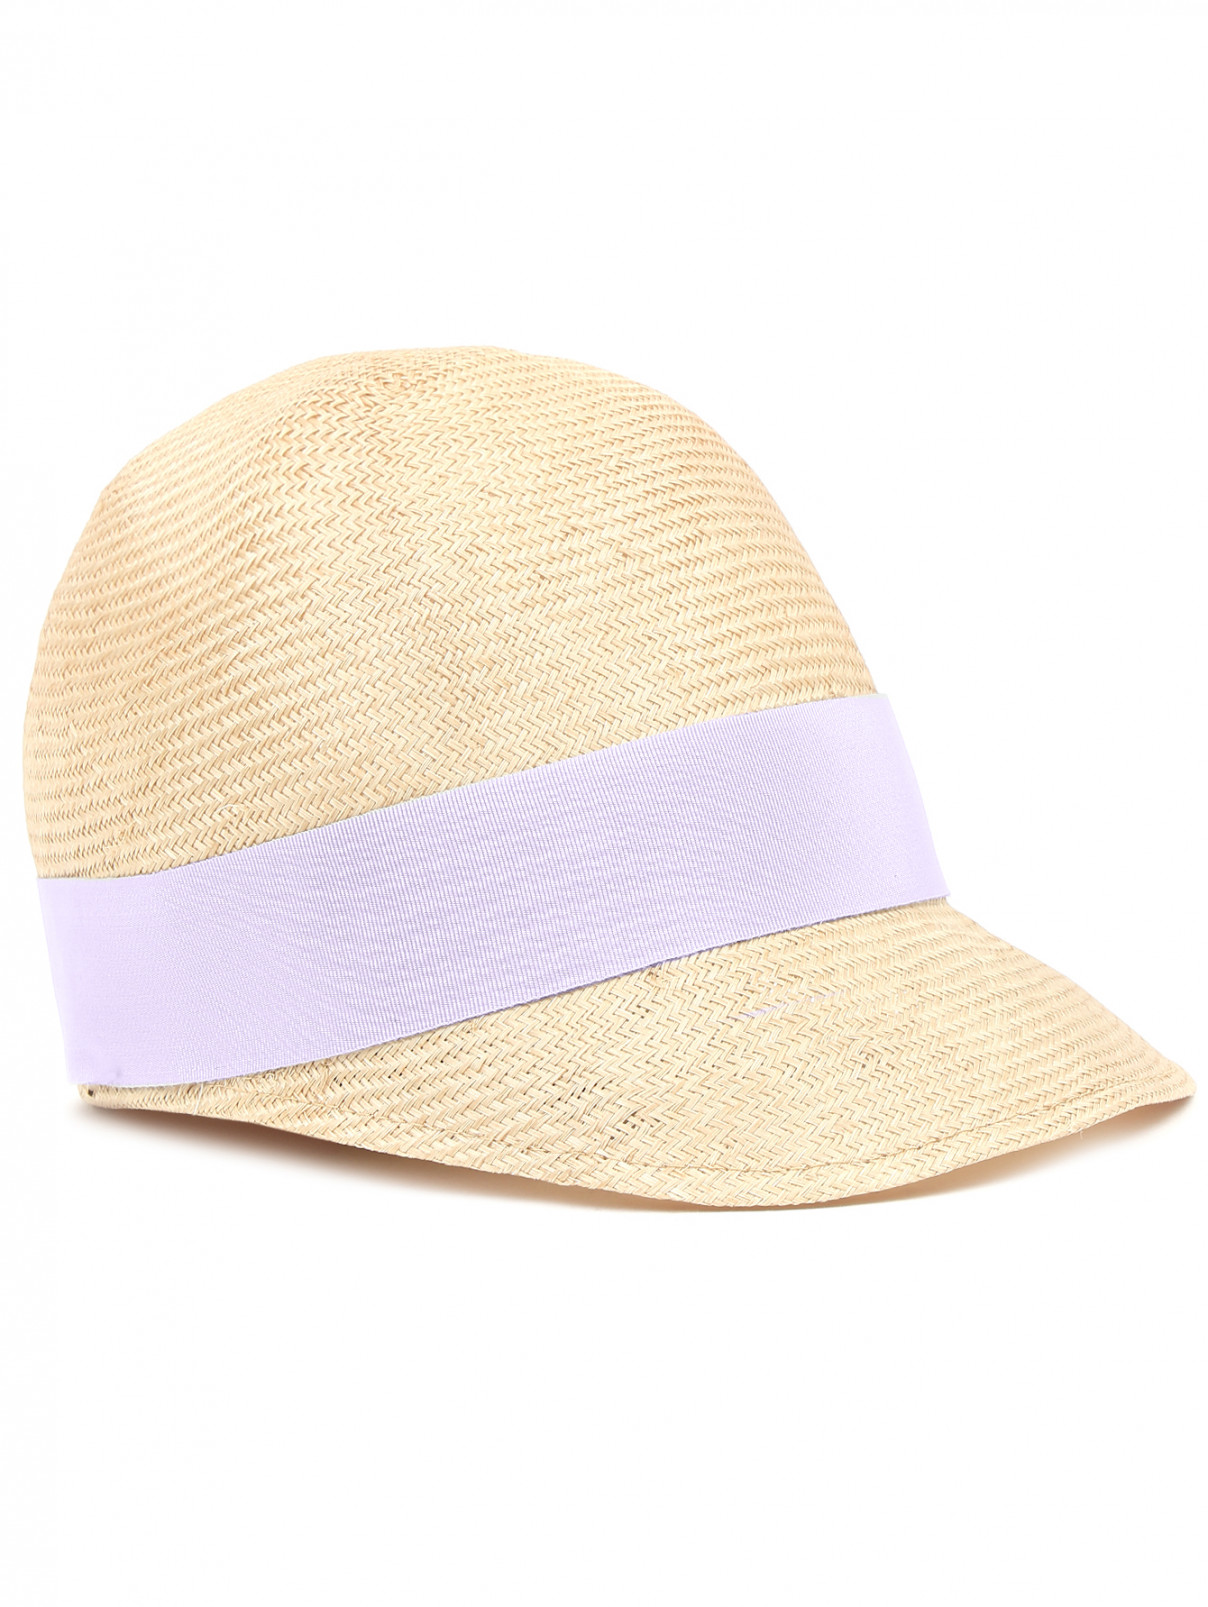 Шляпа из соломы с контрастной отделкой Federica Moretti  –  Общий вид  – Цвет:  Бежевый